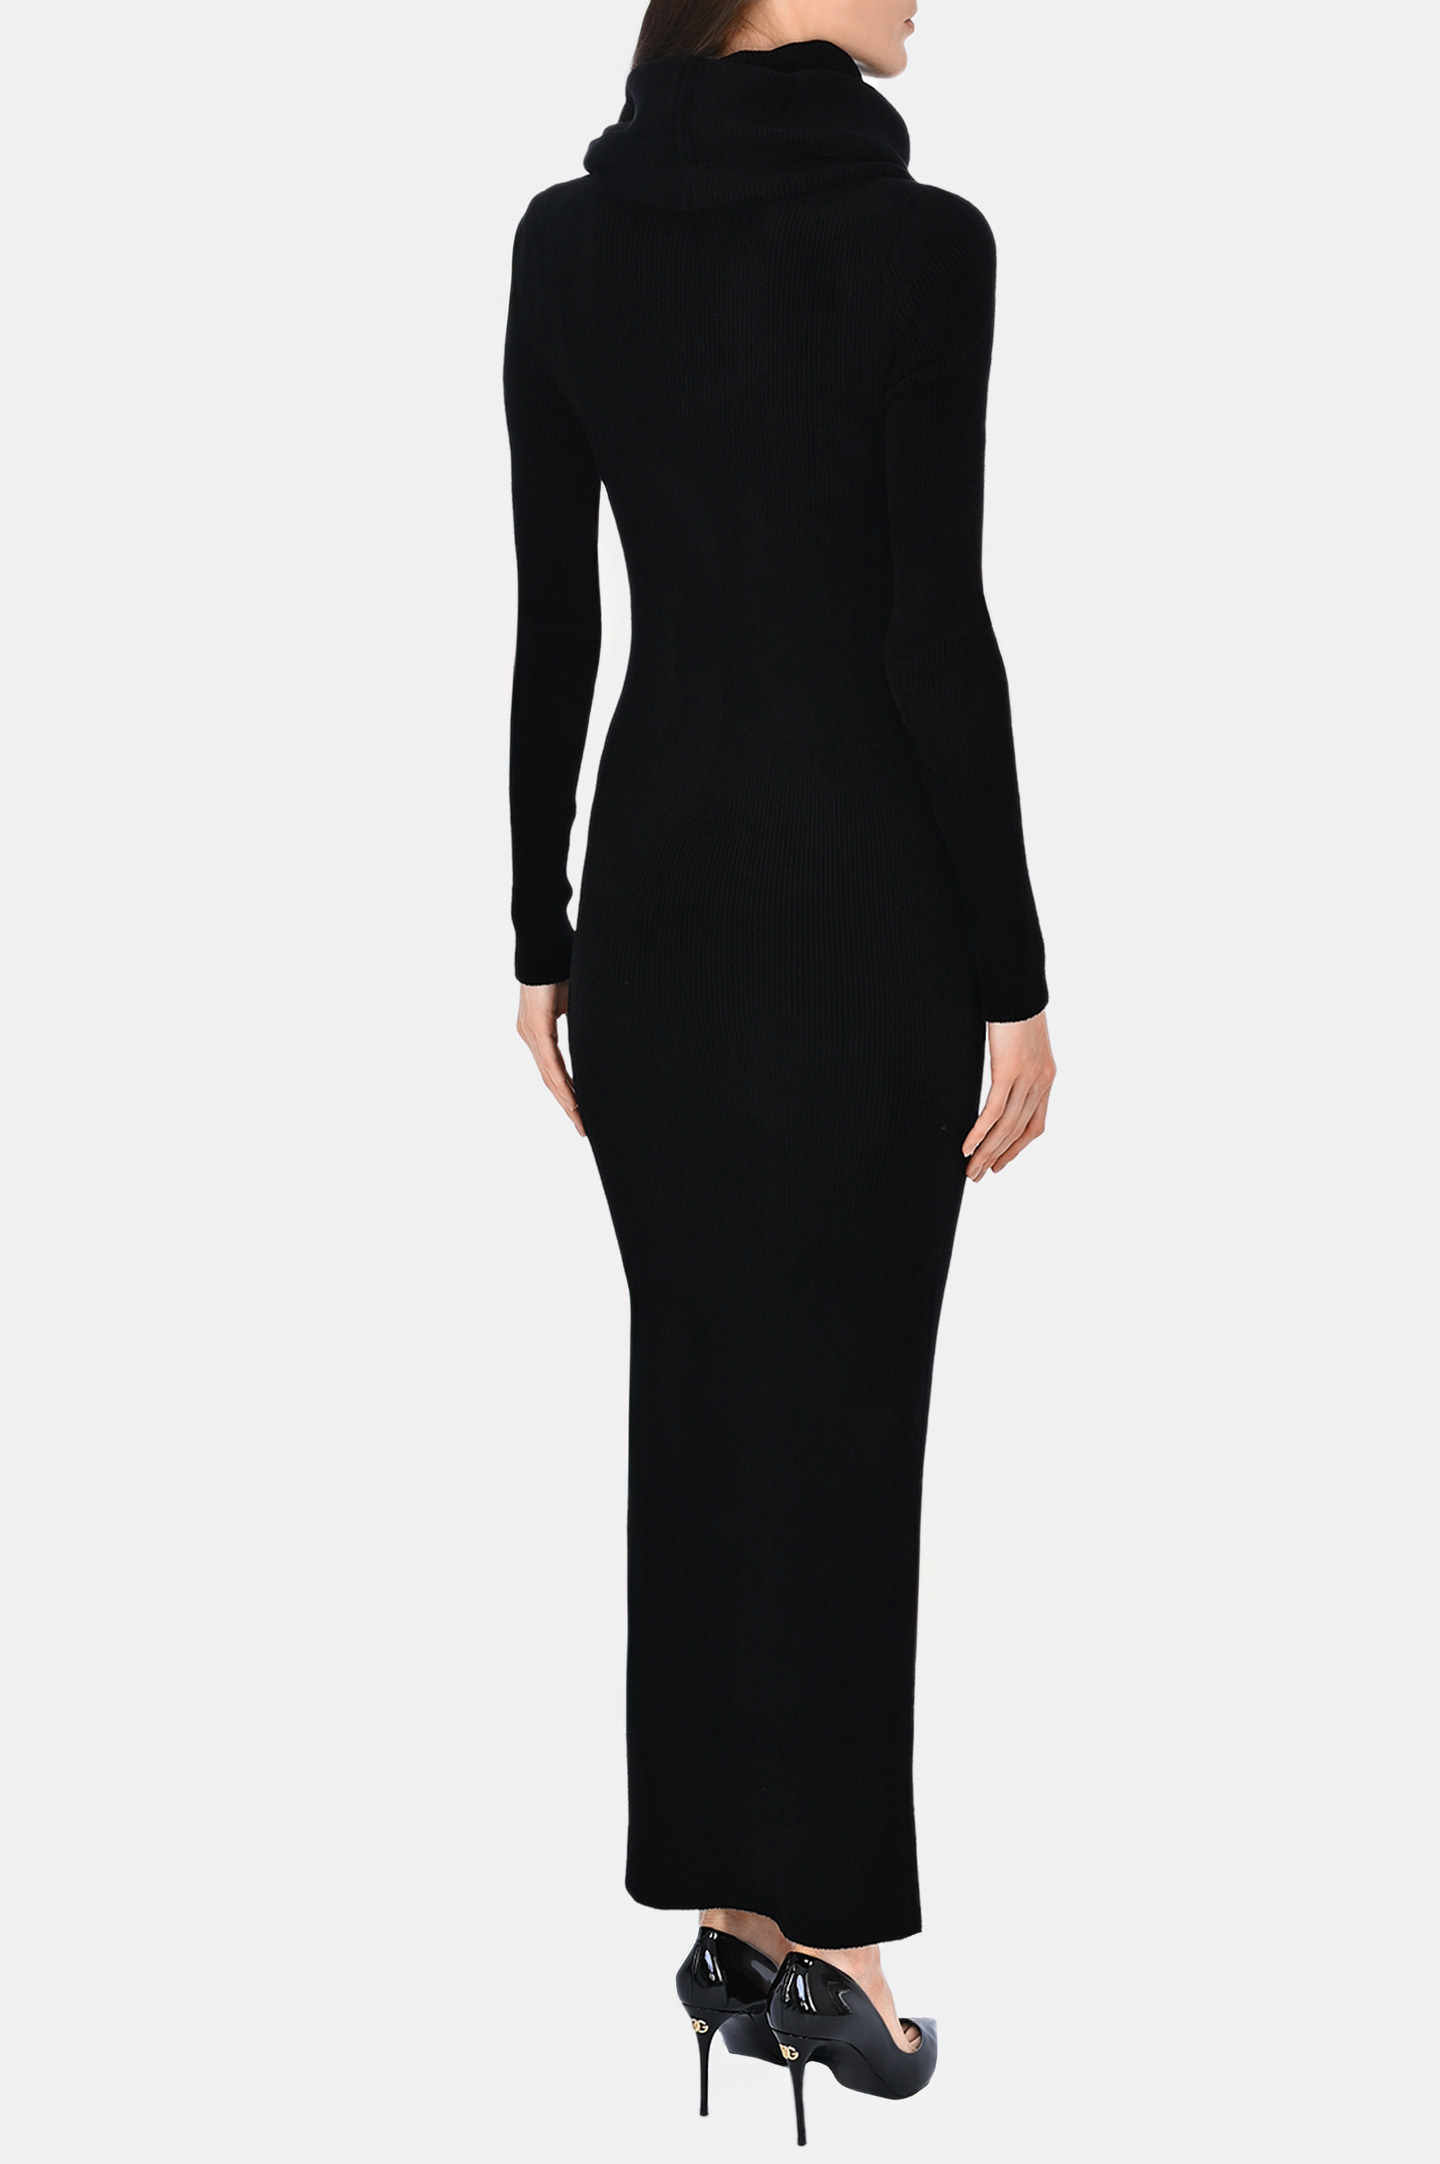 Платье ALEXANDRE VAUTHIER 233KDR1971, цвет: Черный, Женский